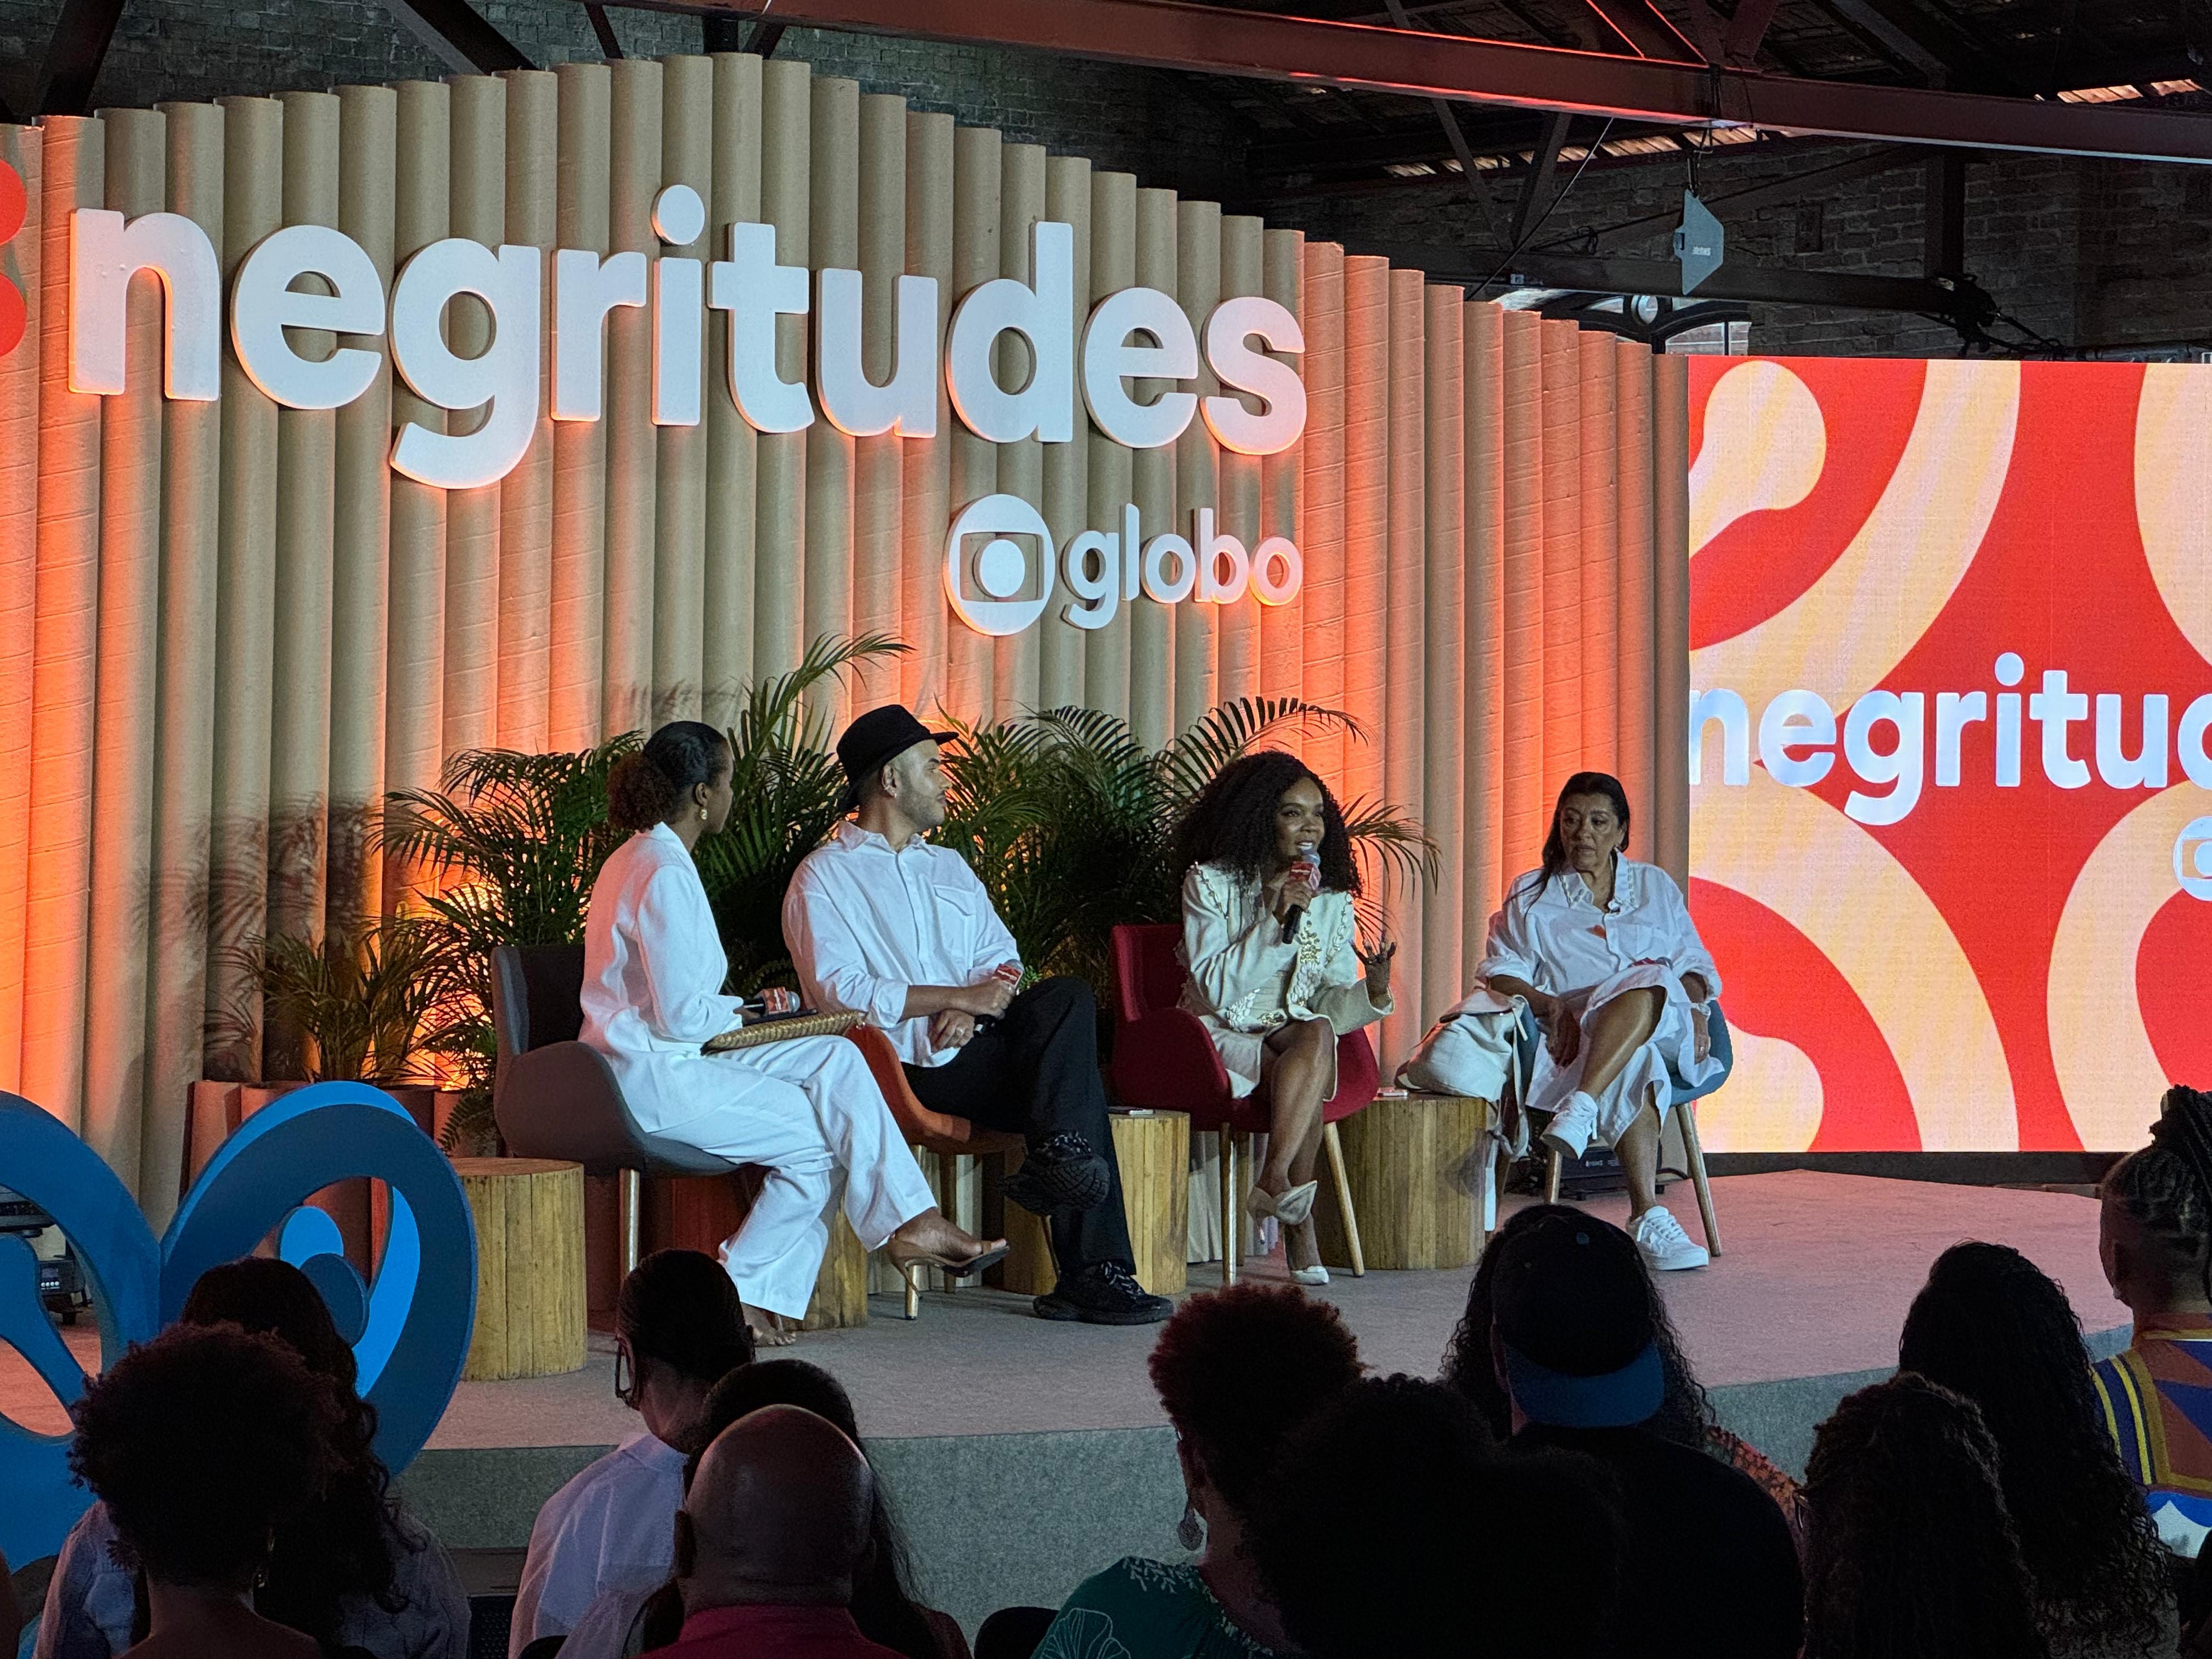 'Racismo é problema das pessoas brancas, não nosso', diz ex-BBB e médica Thelminha no Festival Negritudes Globo